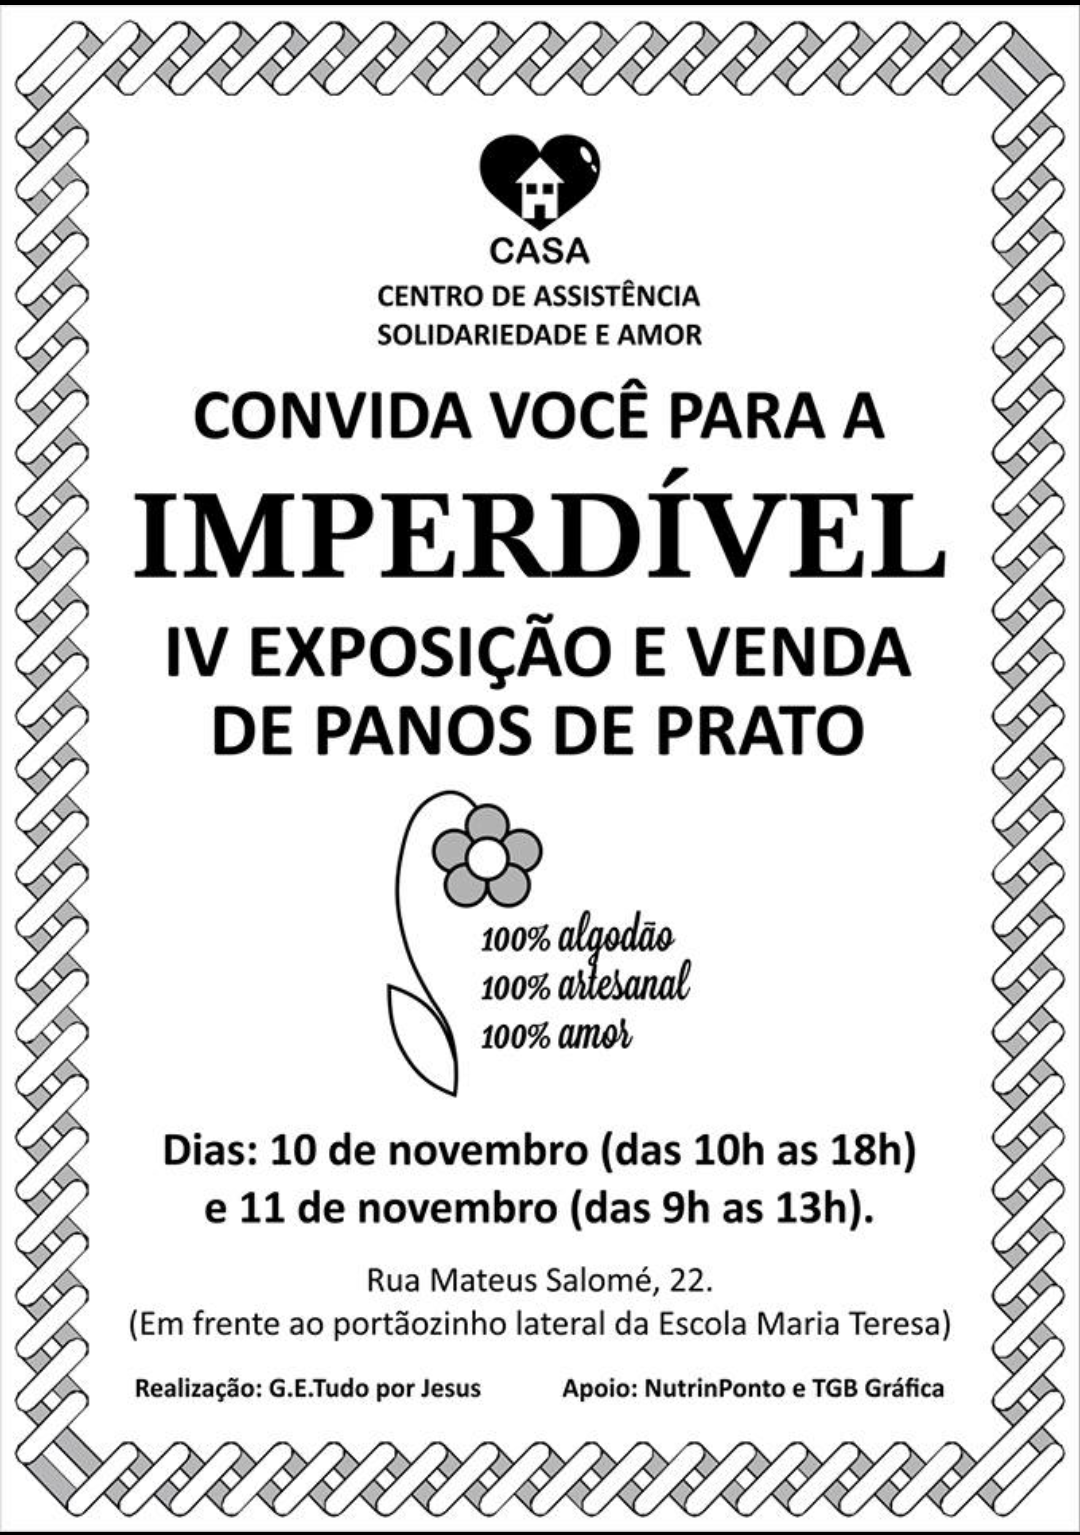 Ocorrerá a 4° edição da exposição e venda de panos de prato em São João del-Rei